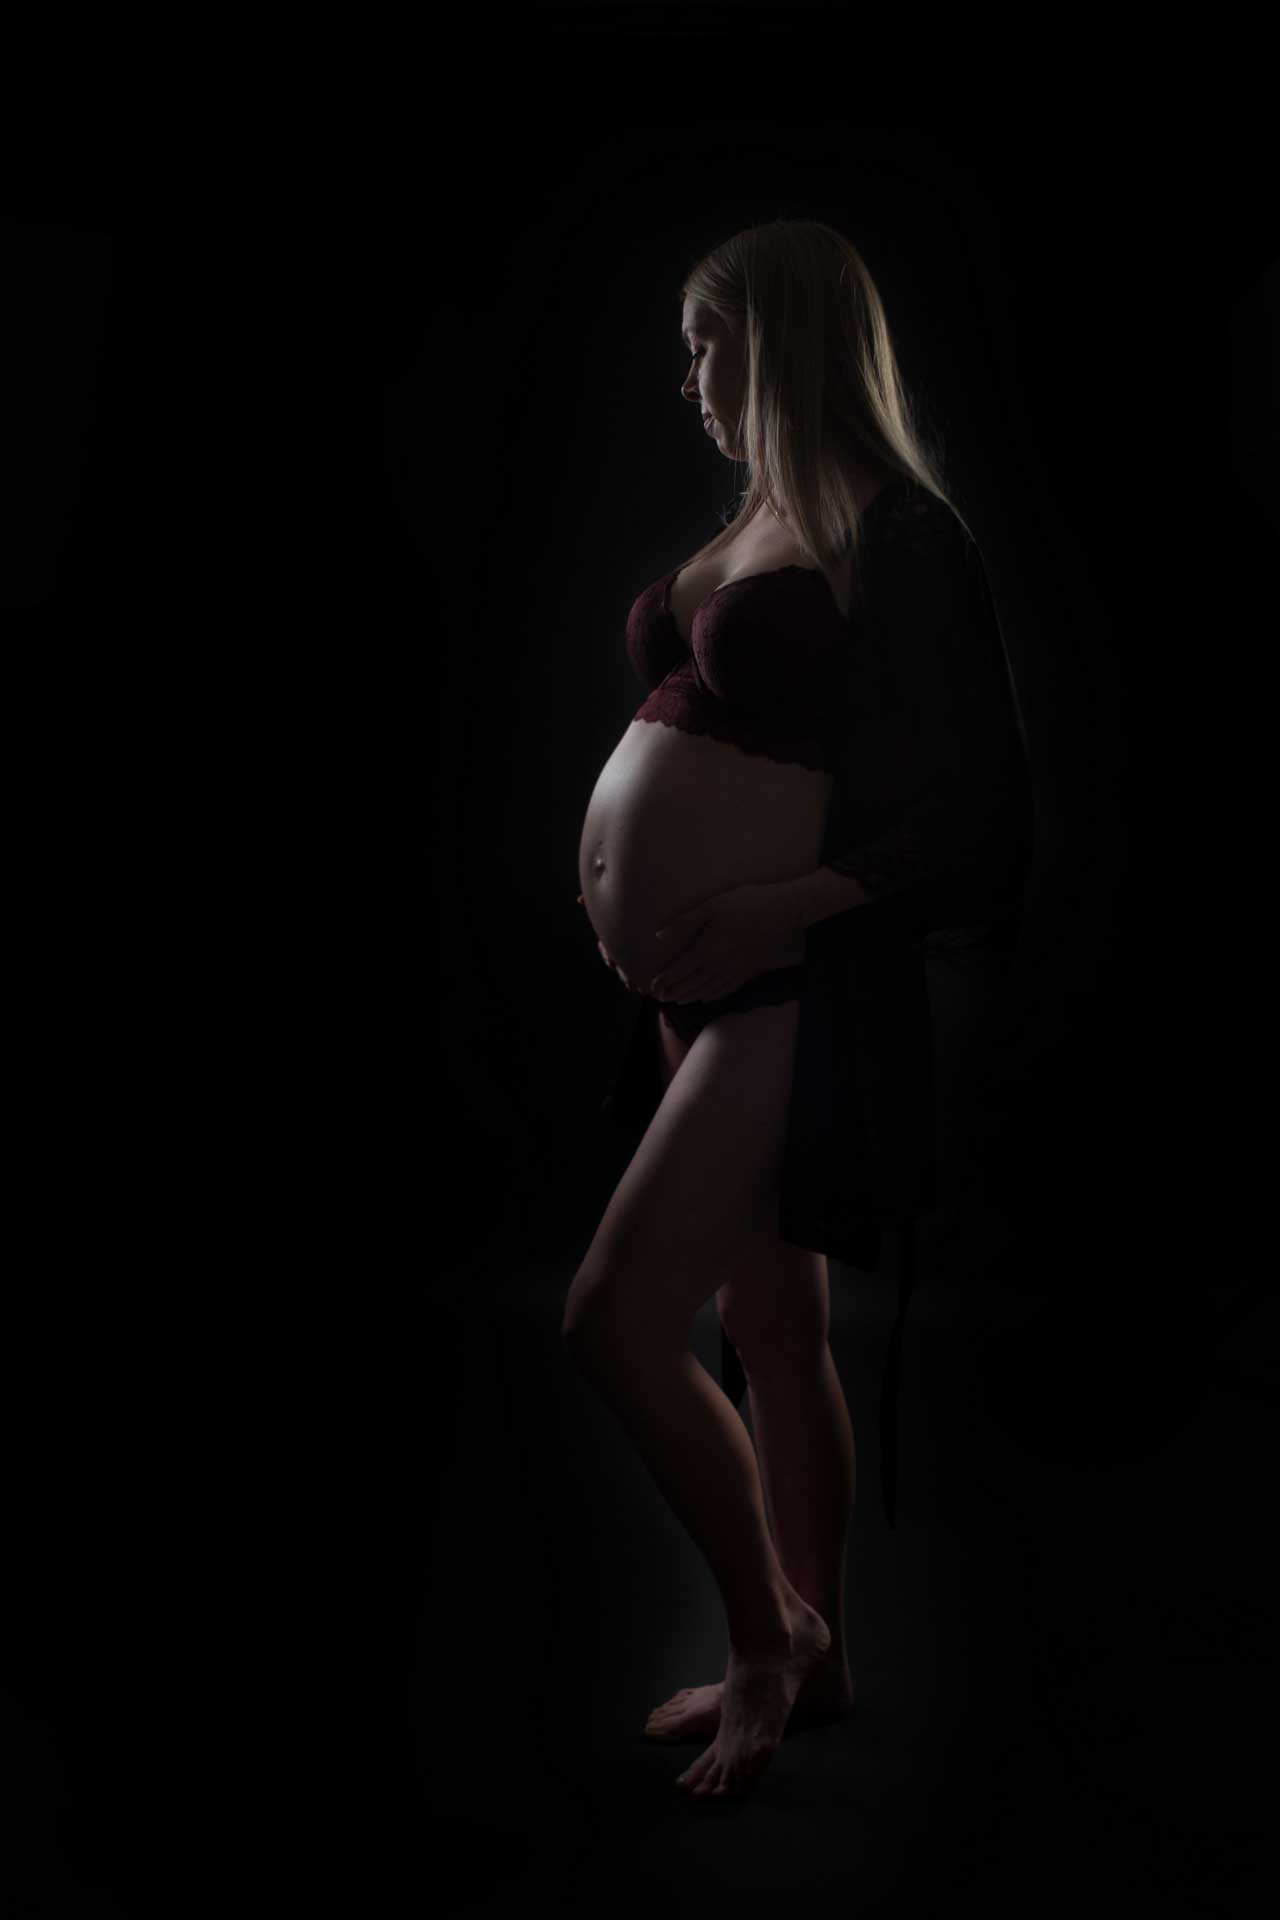 Smukke gravidbilleder i Odense - Lad mig fange din graviditet i en uforglemmelig fotosession